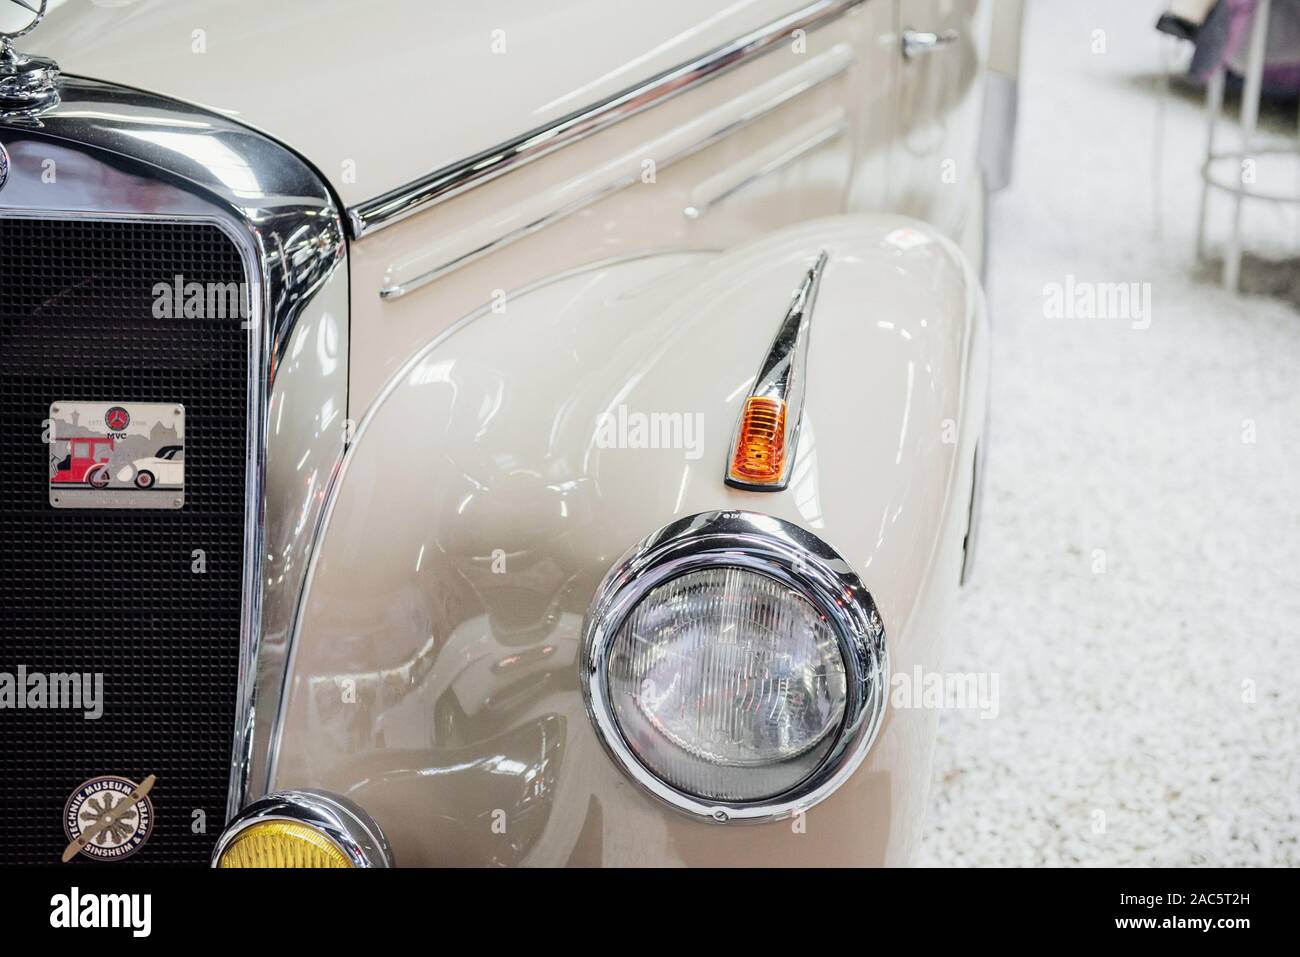 SINSHEIM, Deutschland - Oktober 16, 2018: Technik Museum. Teil des White classic Auto, geparkt im Innenbereich auf weißen Felsen Stockfoto